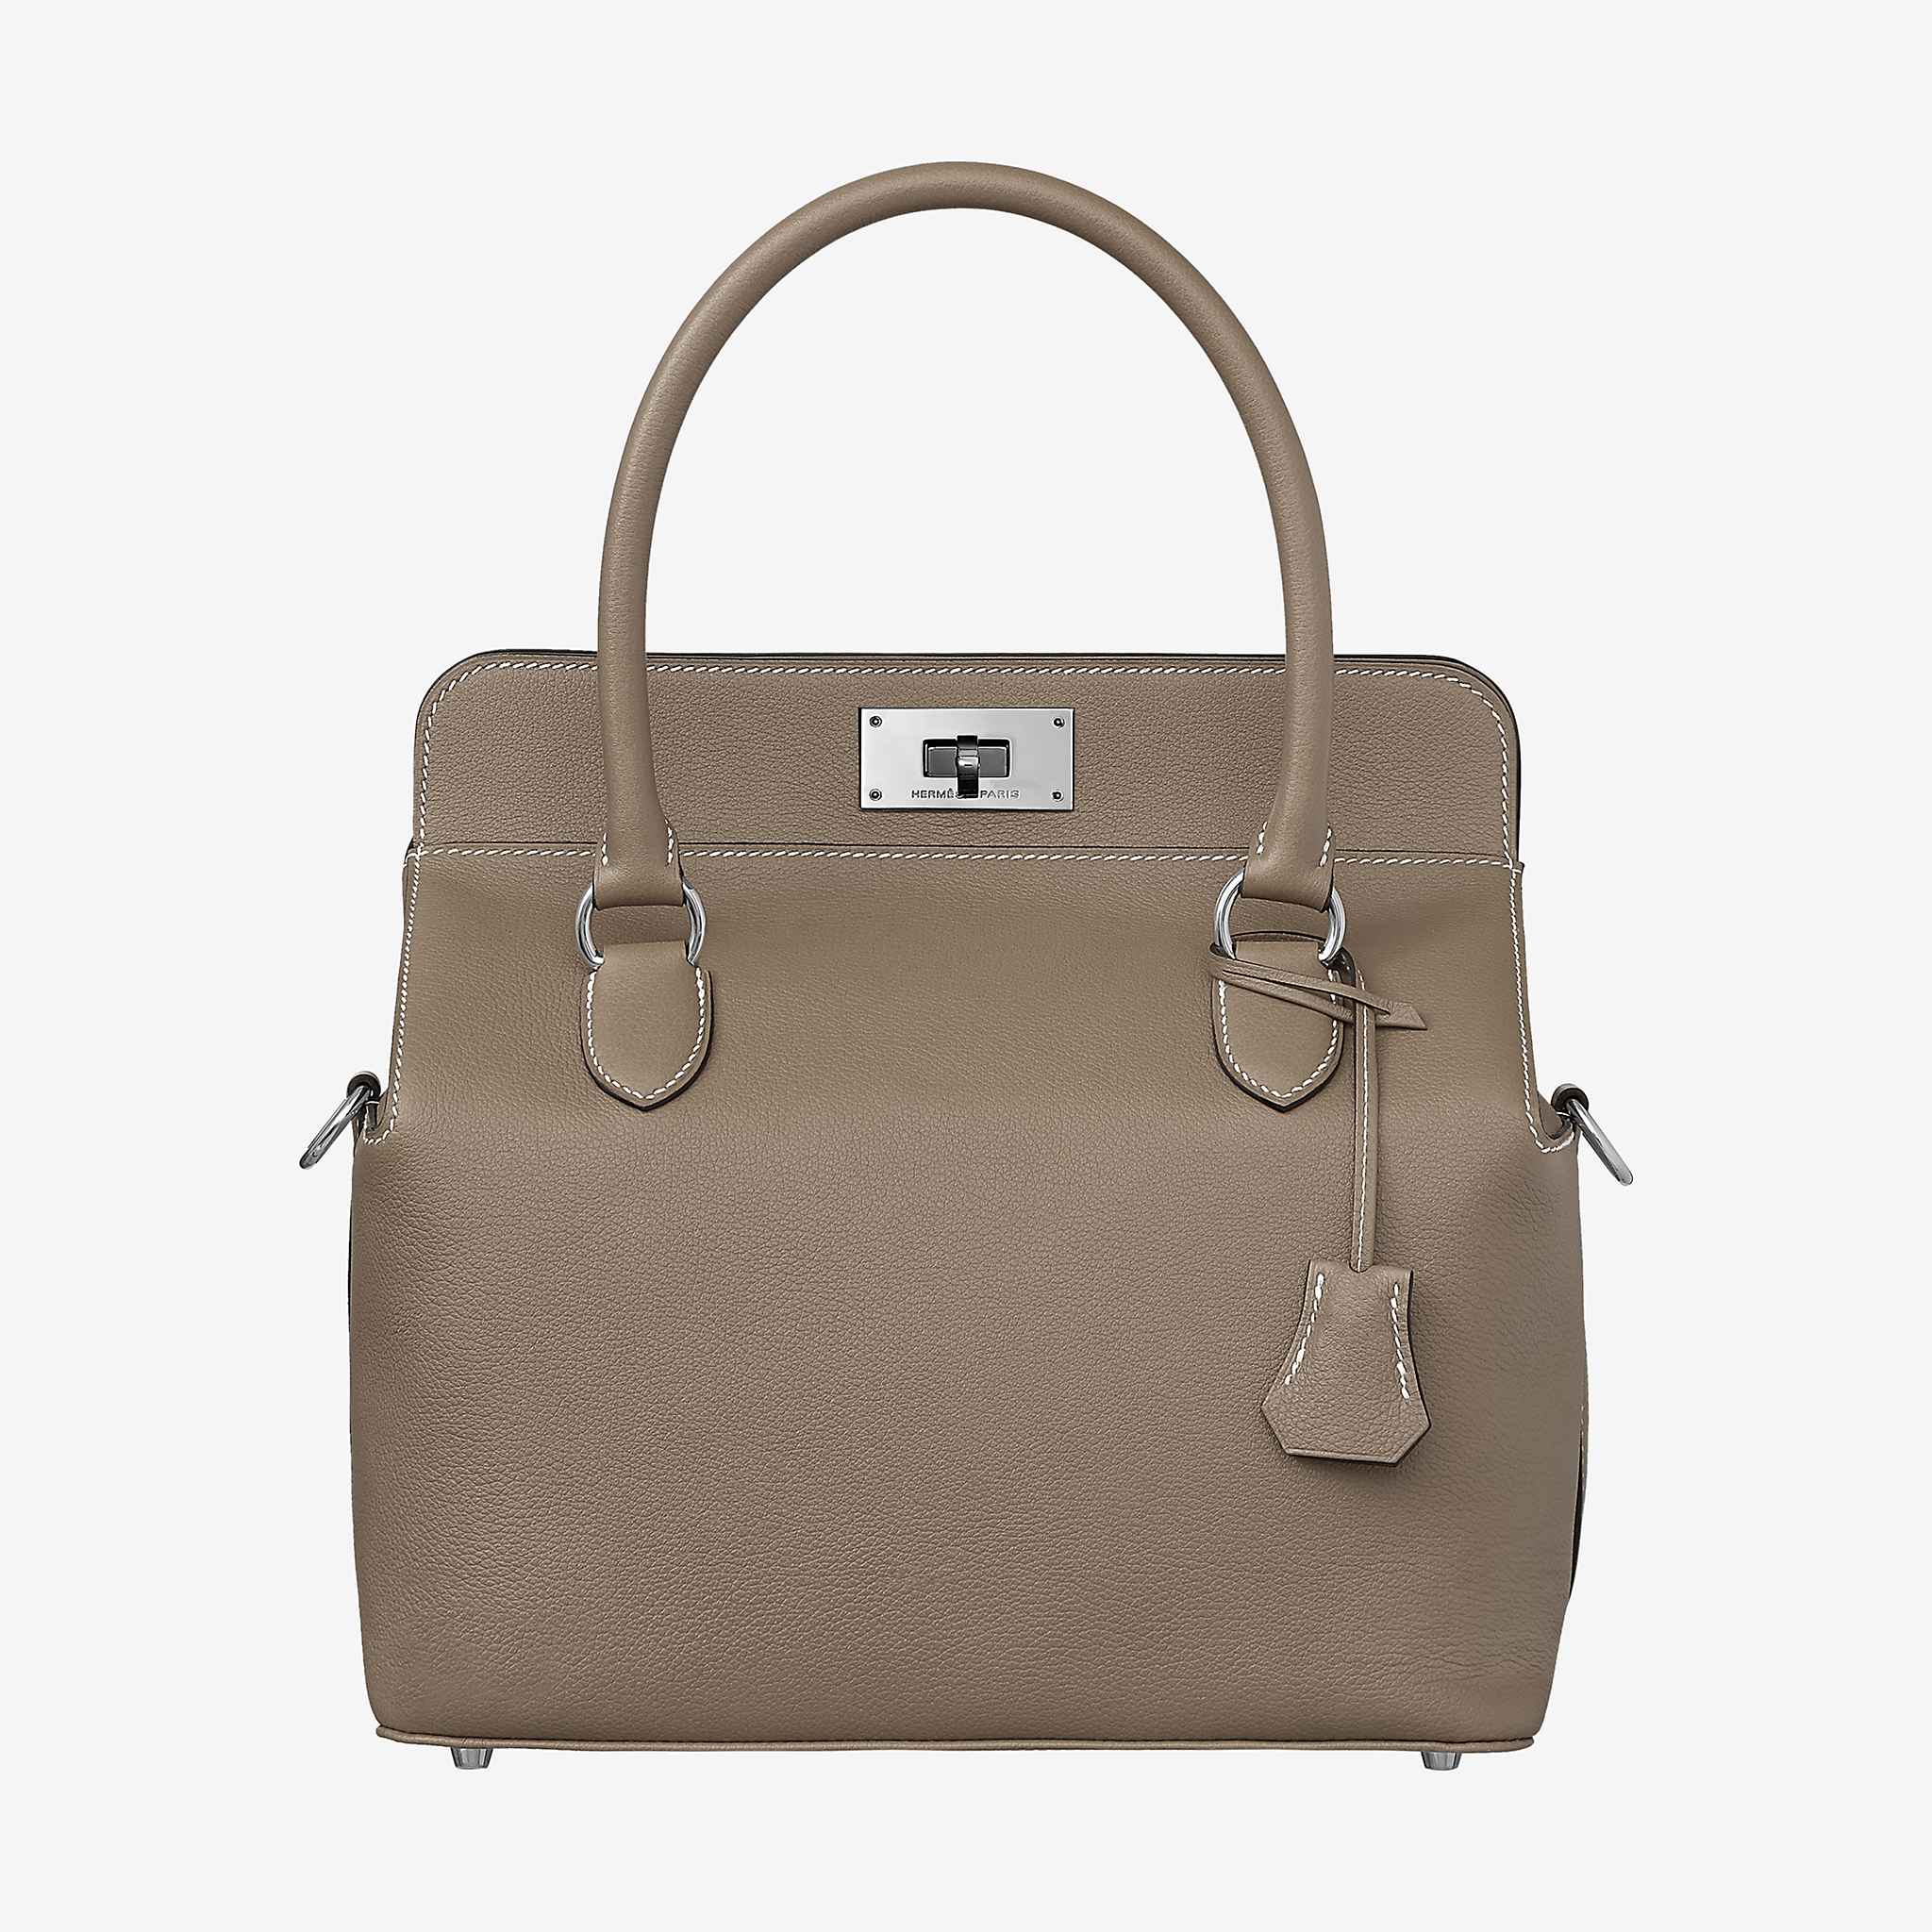 Hermès ToolBox Bag and Tools - PurseBop